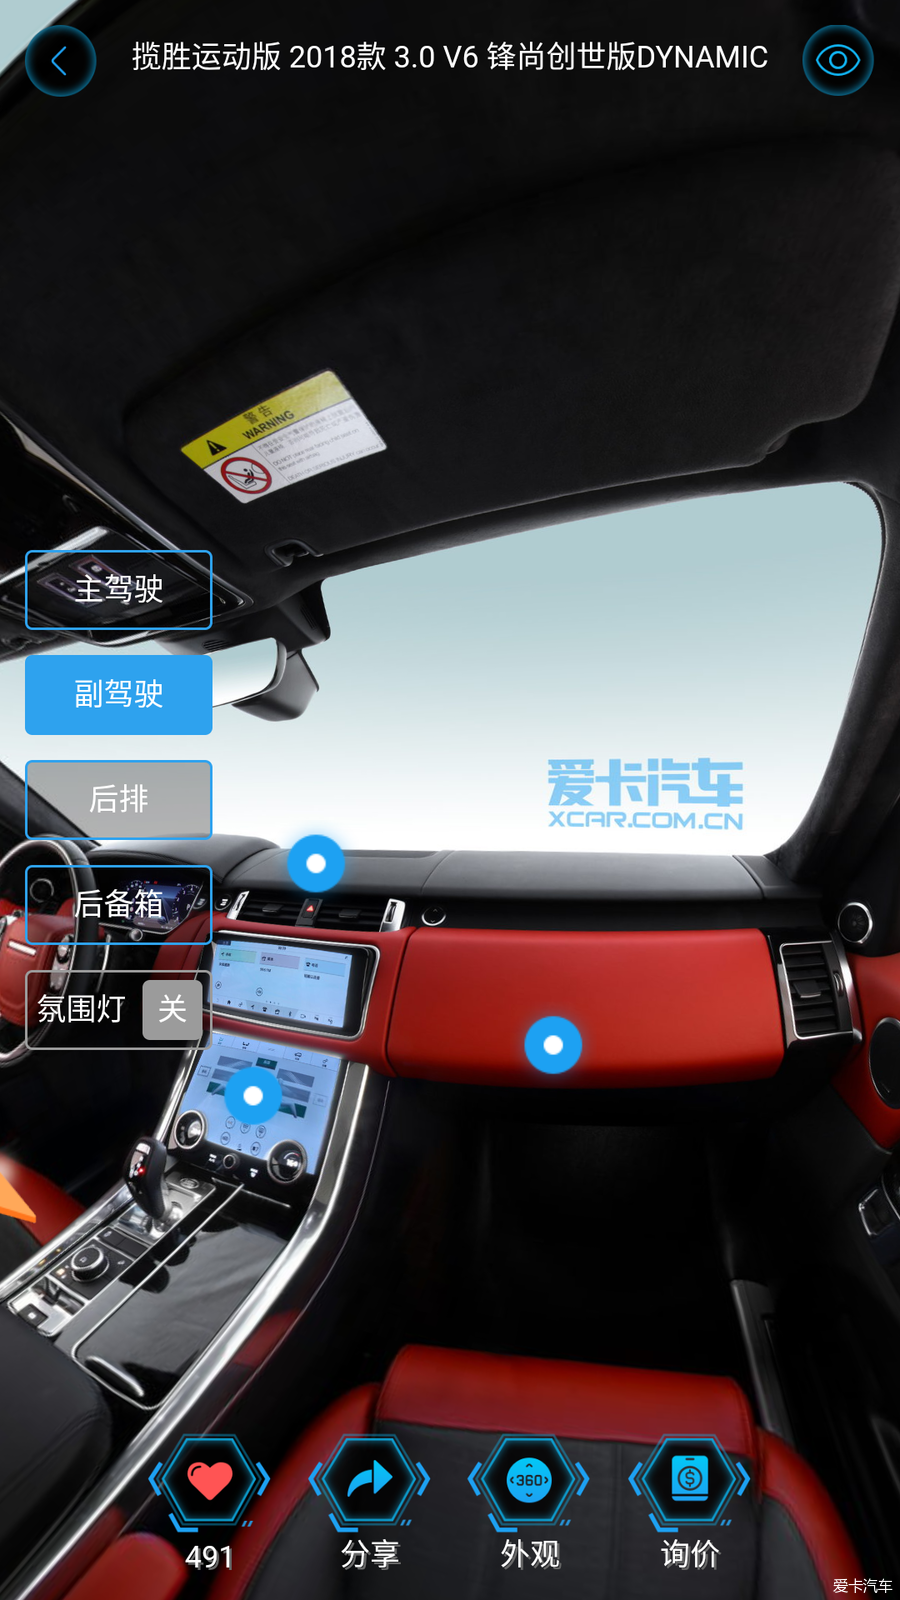 VR全景赏析车型